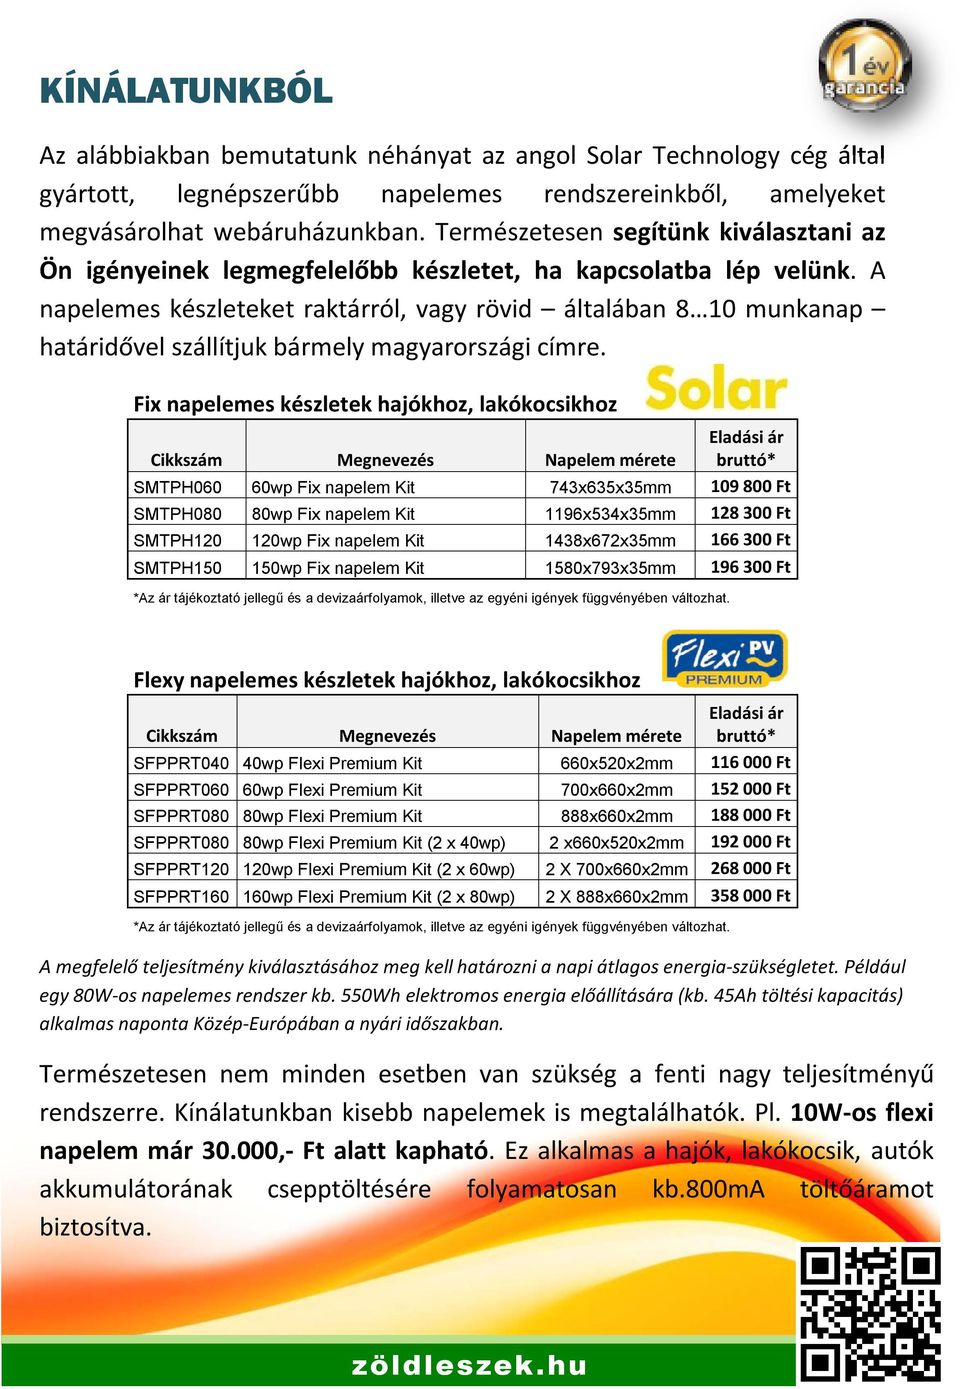 A napelemes készleteket raktárról, vagy rövid általában 8 10 munkanap határidővel szállítjuk bármely magyarországi címre.